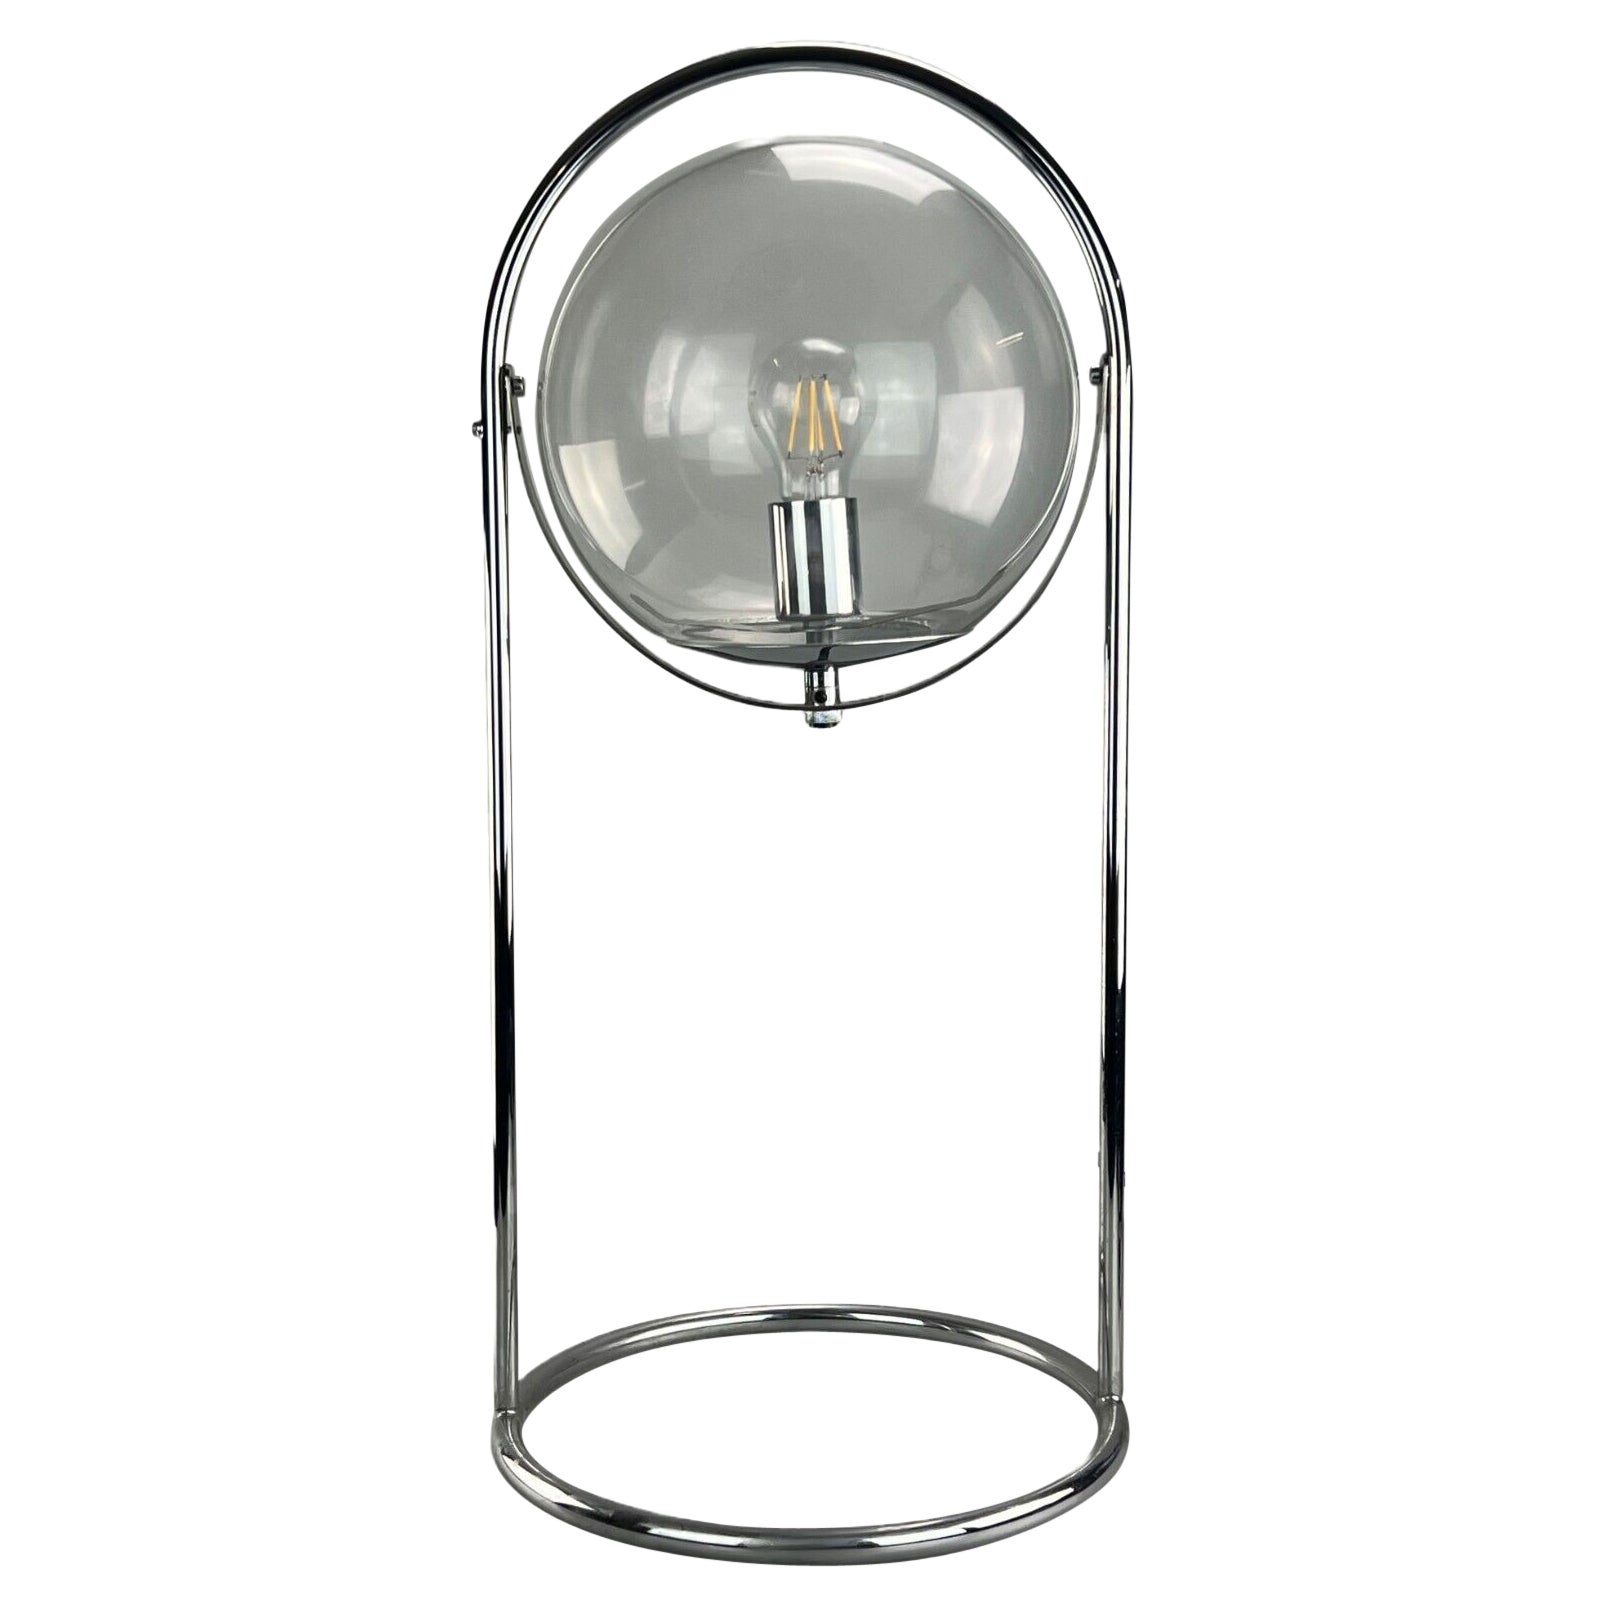 Kugellampenlampe, Tischlampe, Space Age, Design, Glas, Metall, 60er- und 70er-Jahre